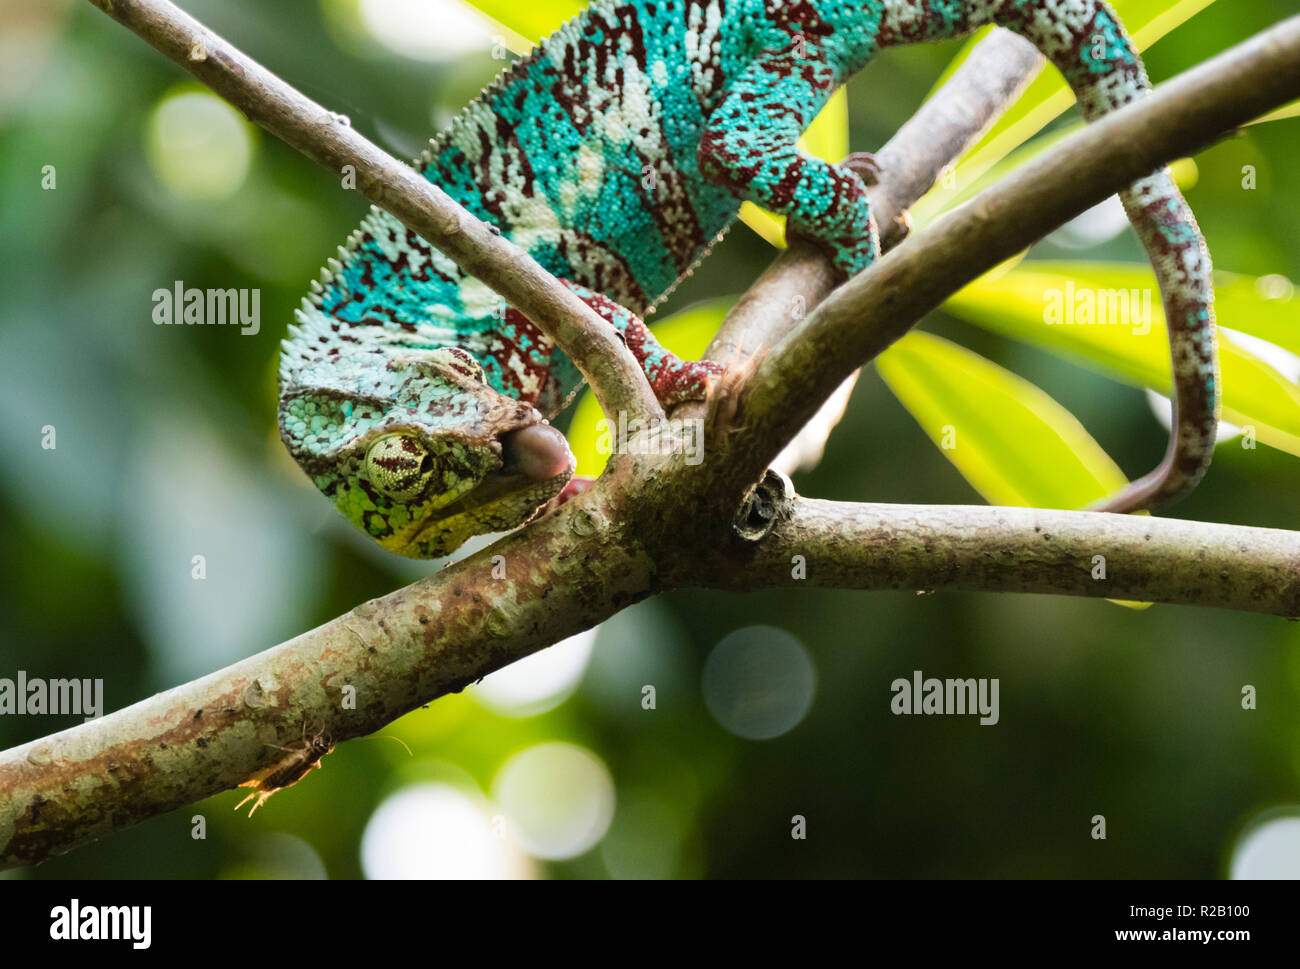 Erwachsenen männlichen Panther chameleon (Furcifer pardalis) in ihrem natürlichen Lebensraum, die Madagaskar Regenwald, Jagd ein Insekt mit seiner langen, klebrigen Zunge. Stockfoto